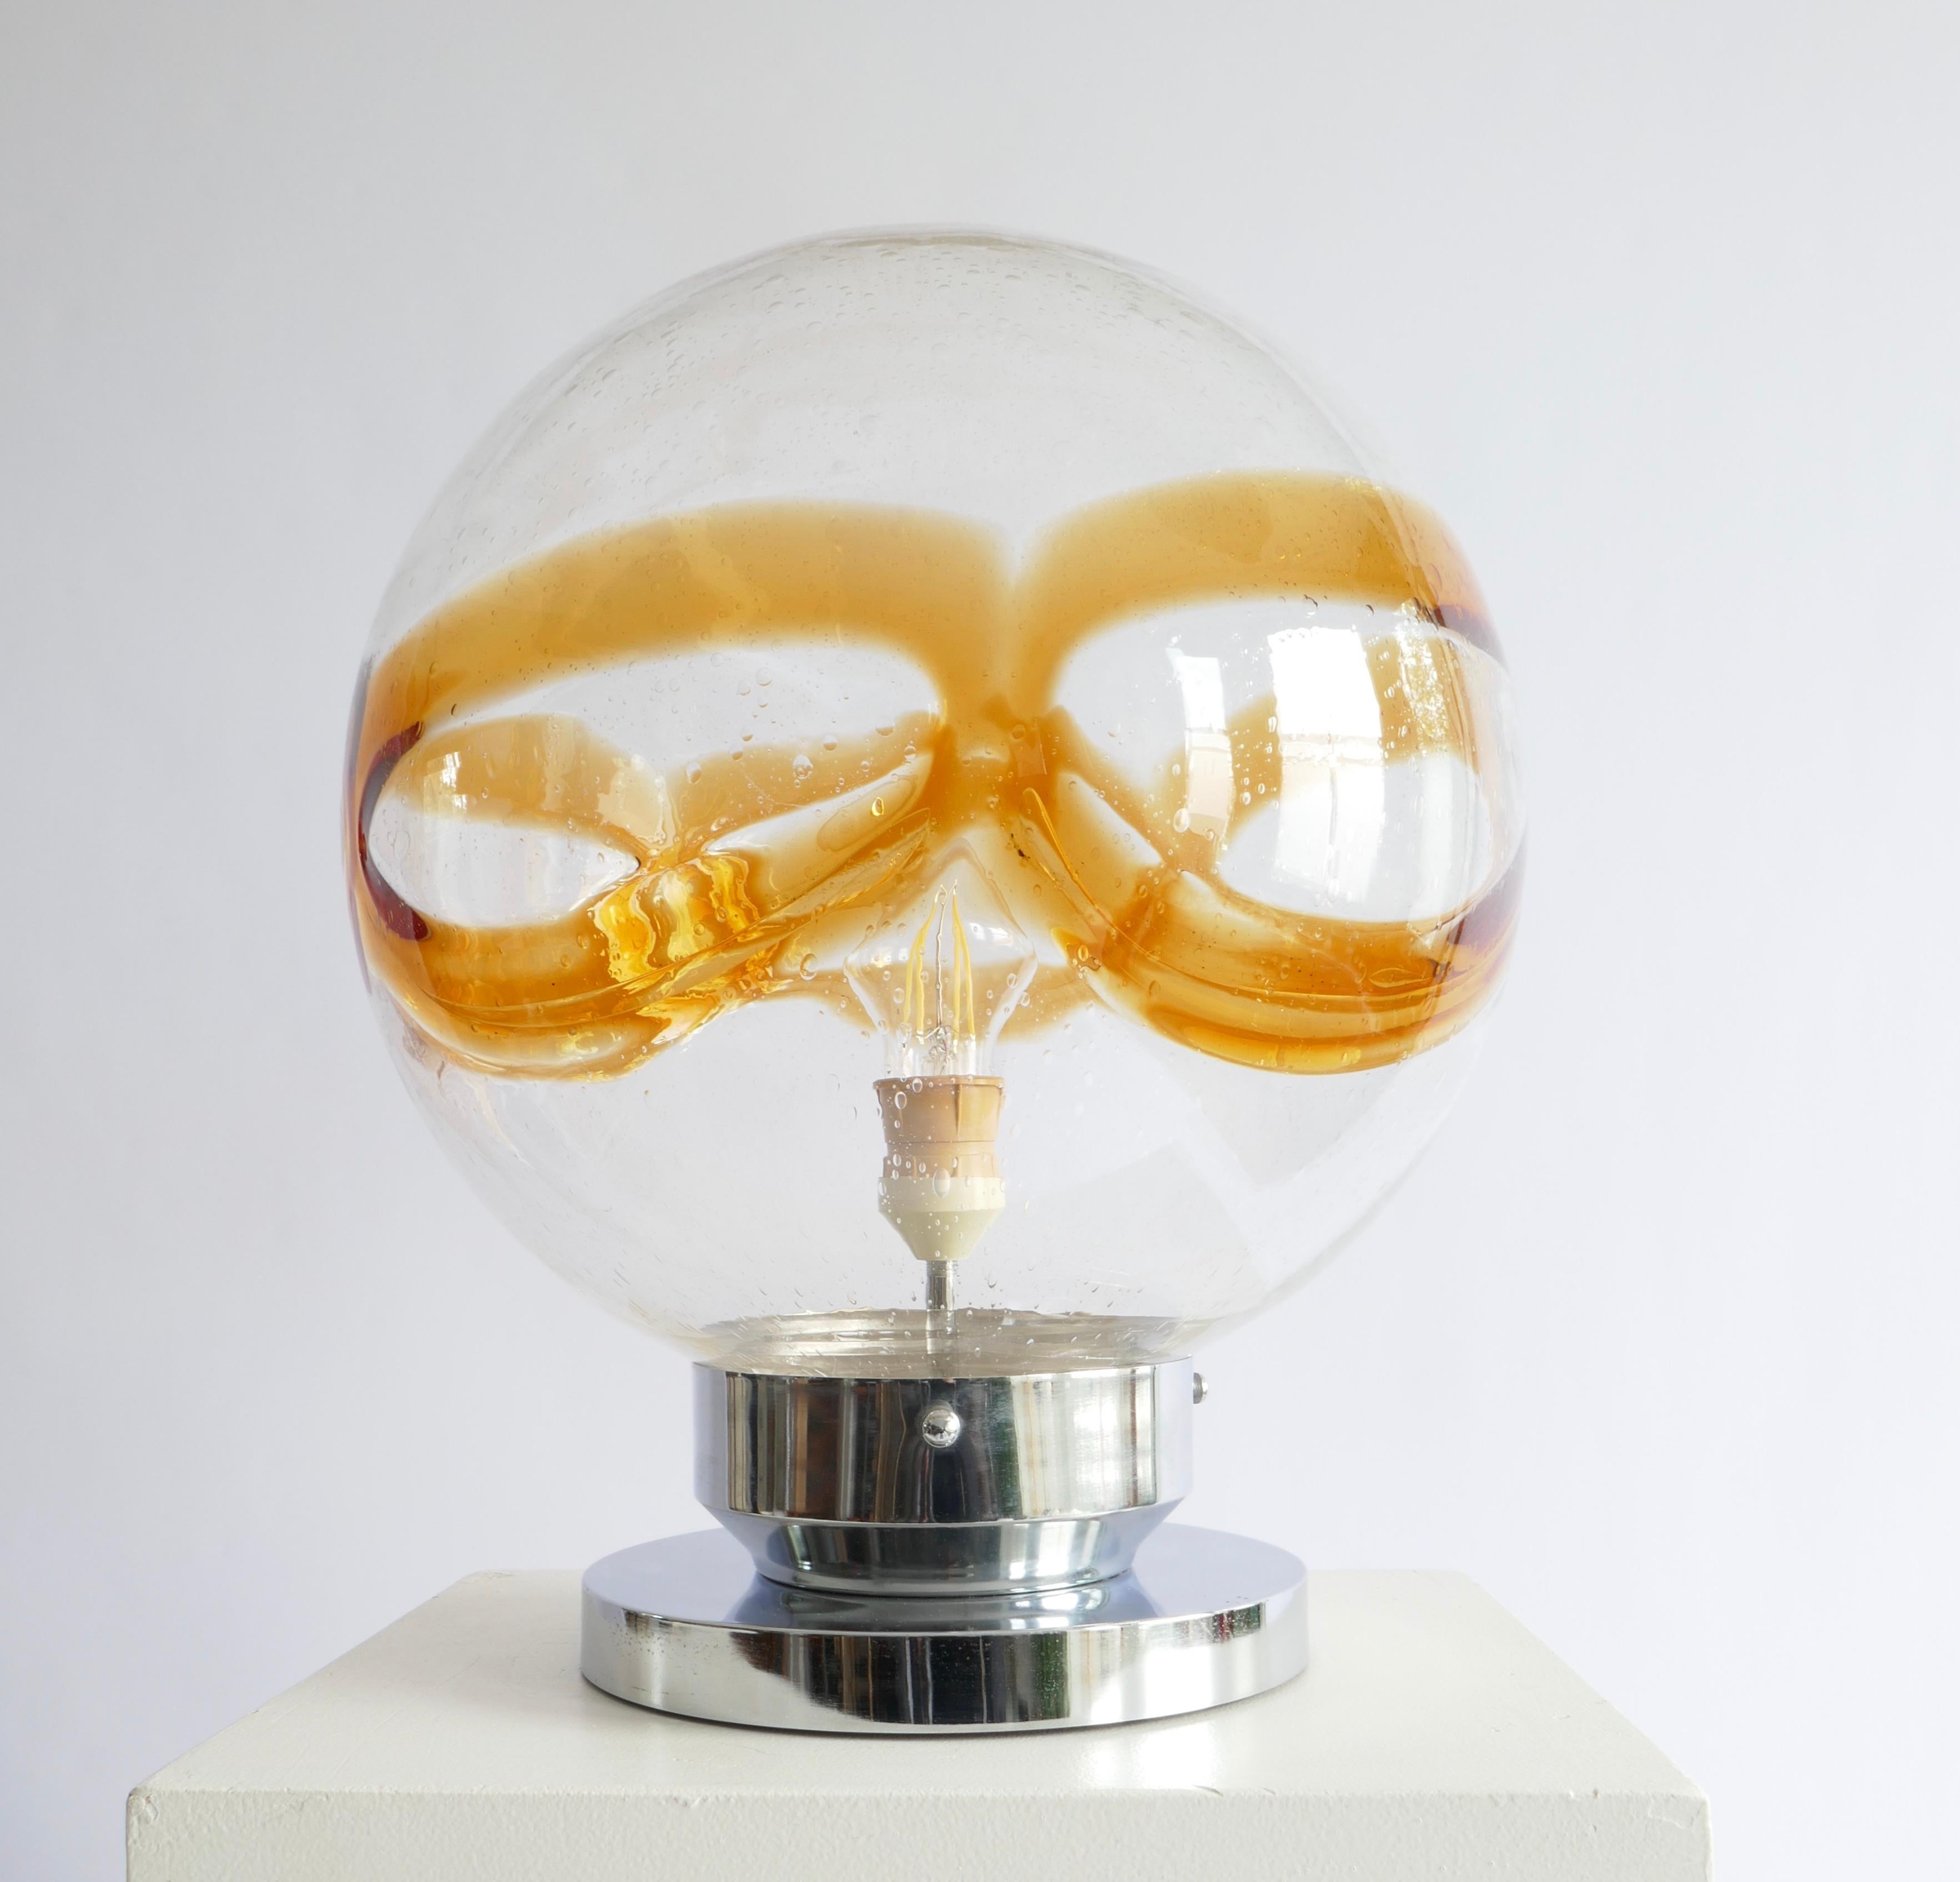 Eine Statement-Lampe und doch so leicht anpassbar an alle Umgebungen

Handgeblasenes Murano Glas mit Chromsockel

Höhe 42cm
Durchmesser 35cm
Chromsockel Durchmesser 22cm

Italien 1970.